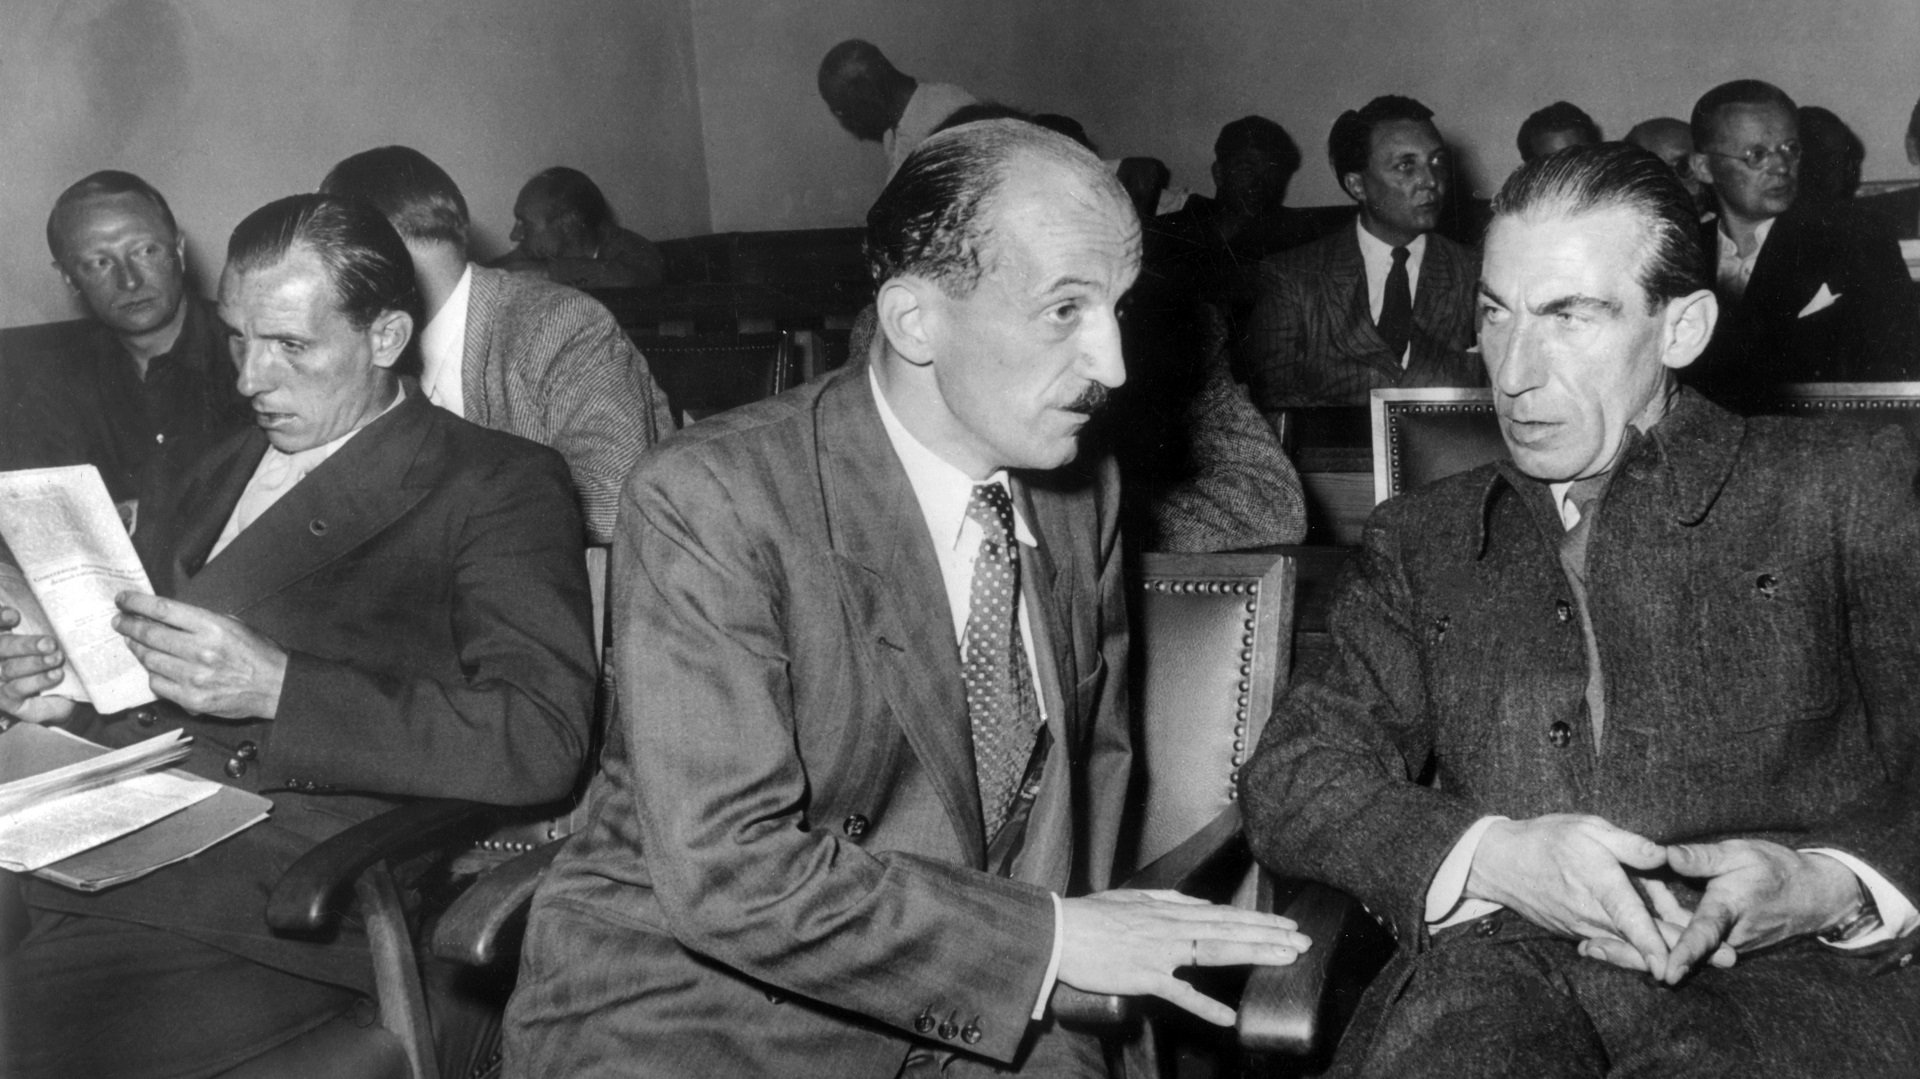 Die beiden stellvertretenden Vorsitzenden der SRP (Sozialistische Reichspartei) Otto Ernst Remer (l) und Graf Wolf von Westarp bei der BVerfG-Verhandlung 1951. 1952 wurde die Partei letztlich verboten.